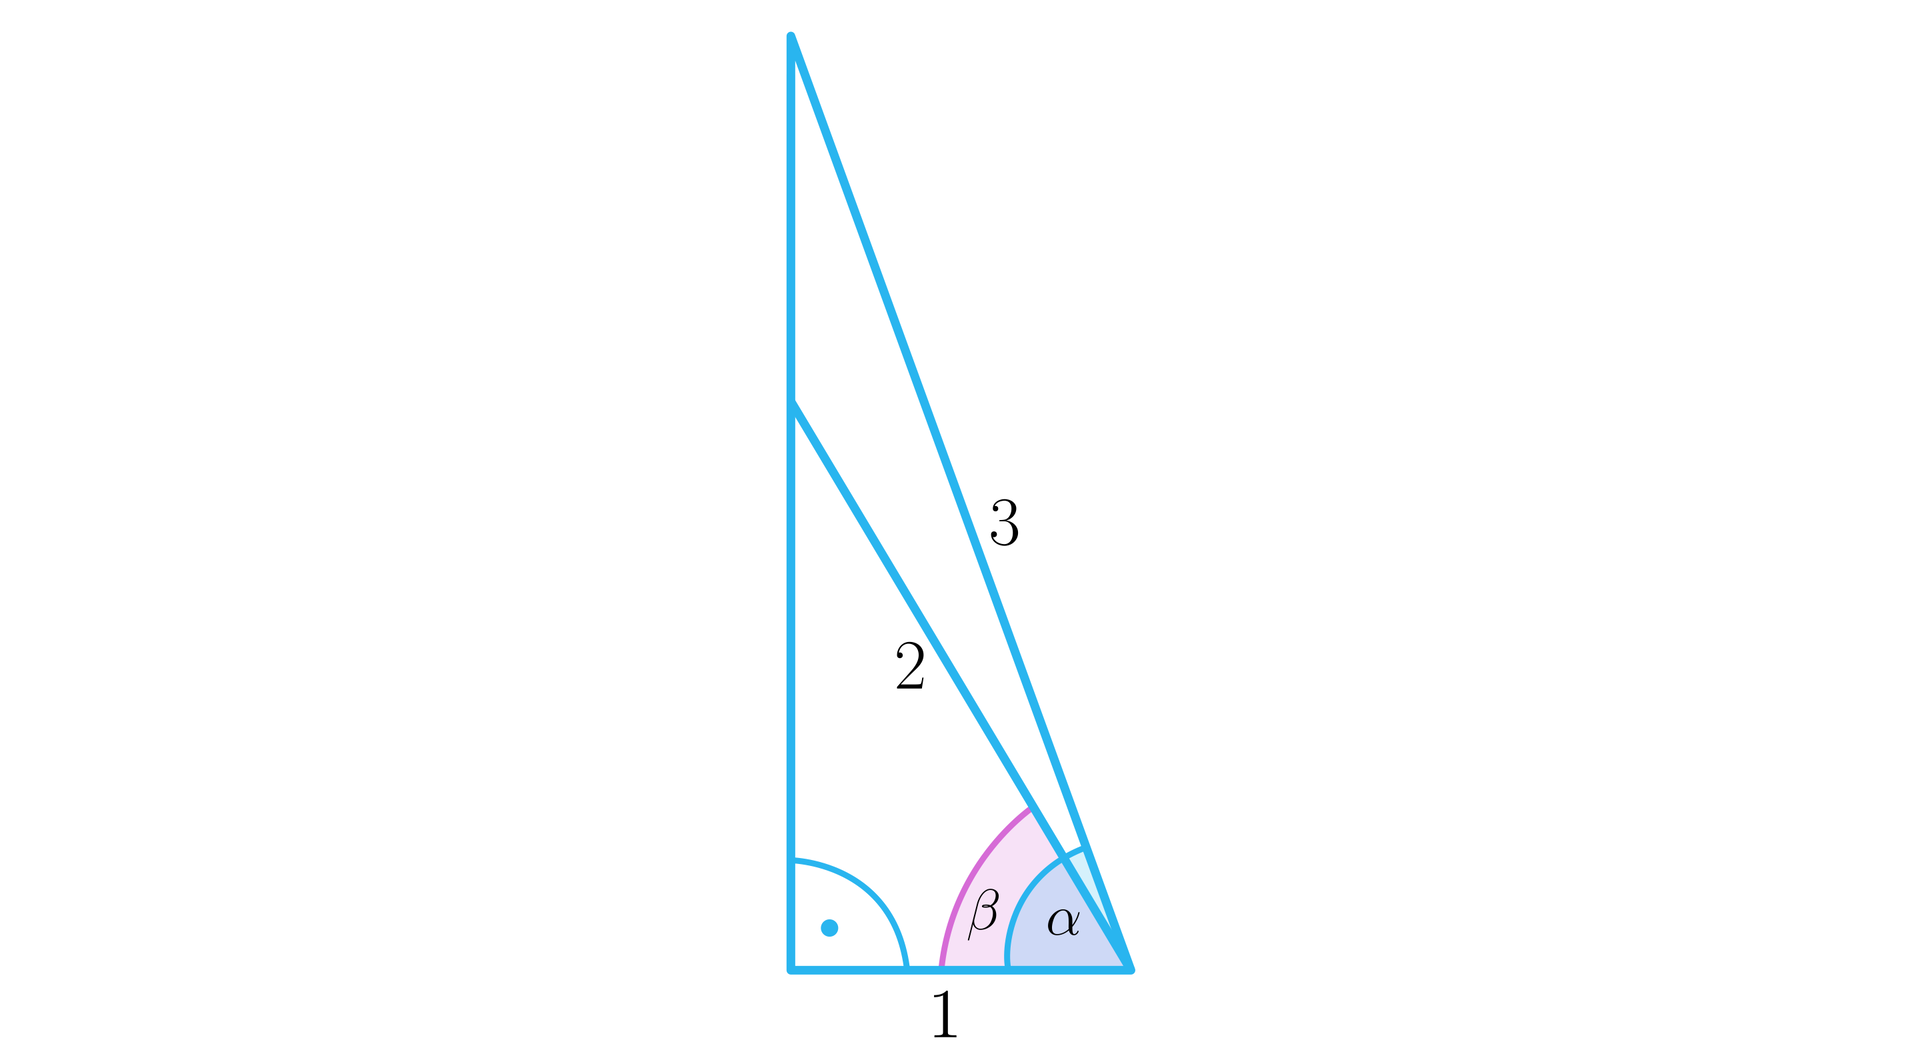 Rysunek przedstawia trójkąt prostokątny o  poziomej przyprostokątnej, czyli podstawie o długości 1 oraz o przeciwprostokątnej o długości 3. Zaznaczono także dwa kąty wewnętrzne trójkąta. Kąt prosty między pionową a poziomą przyprostokątną oraz kąt α między podstawą trójkąta a jego przeciwprostokątną. Wewnątrz tego trójkąta narysowano trójkąt prostokątny o  tej samej podstawie o długości 1, przy czym o krótszej przeciwprostokątnej o długości 2, którą poprowadzono do tej samej pionowej przyprostokątnej, która należy do dużego trójkąta. W mniejszym trójkącie pokrywa się kąt prosty, jednak między podstawą a przeciwprostokątną zaznaczono kąt β.